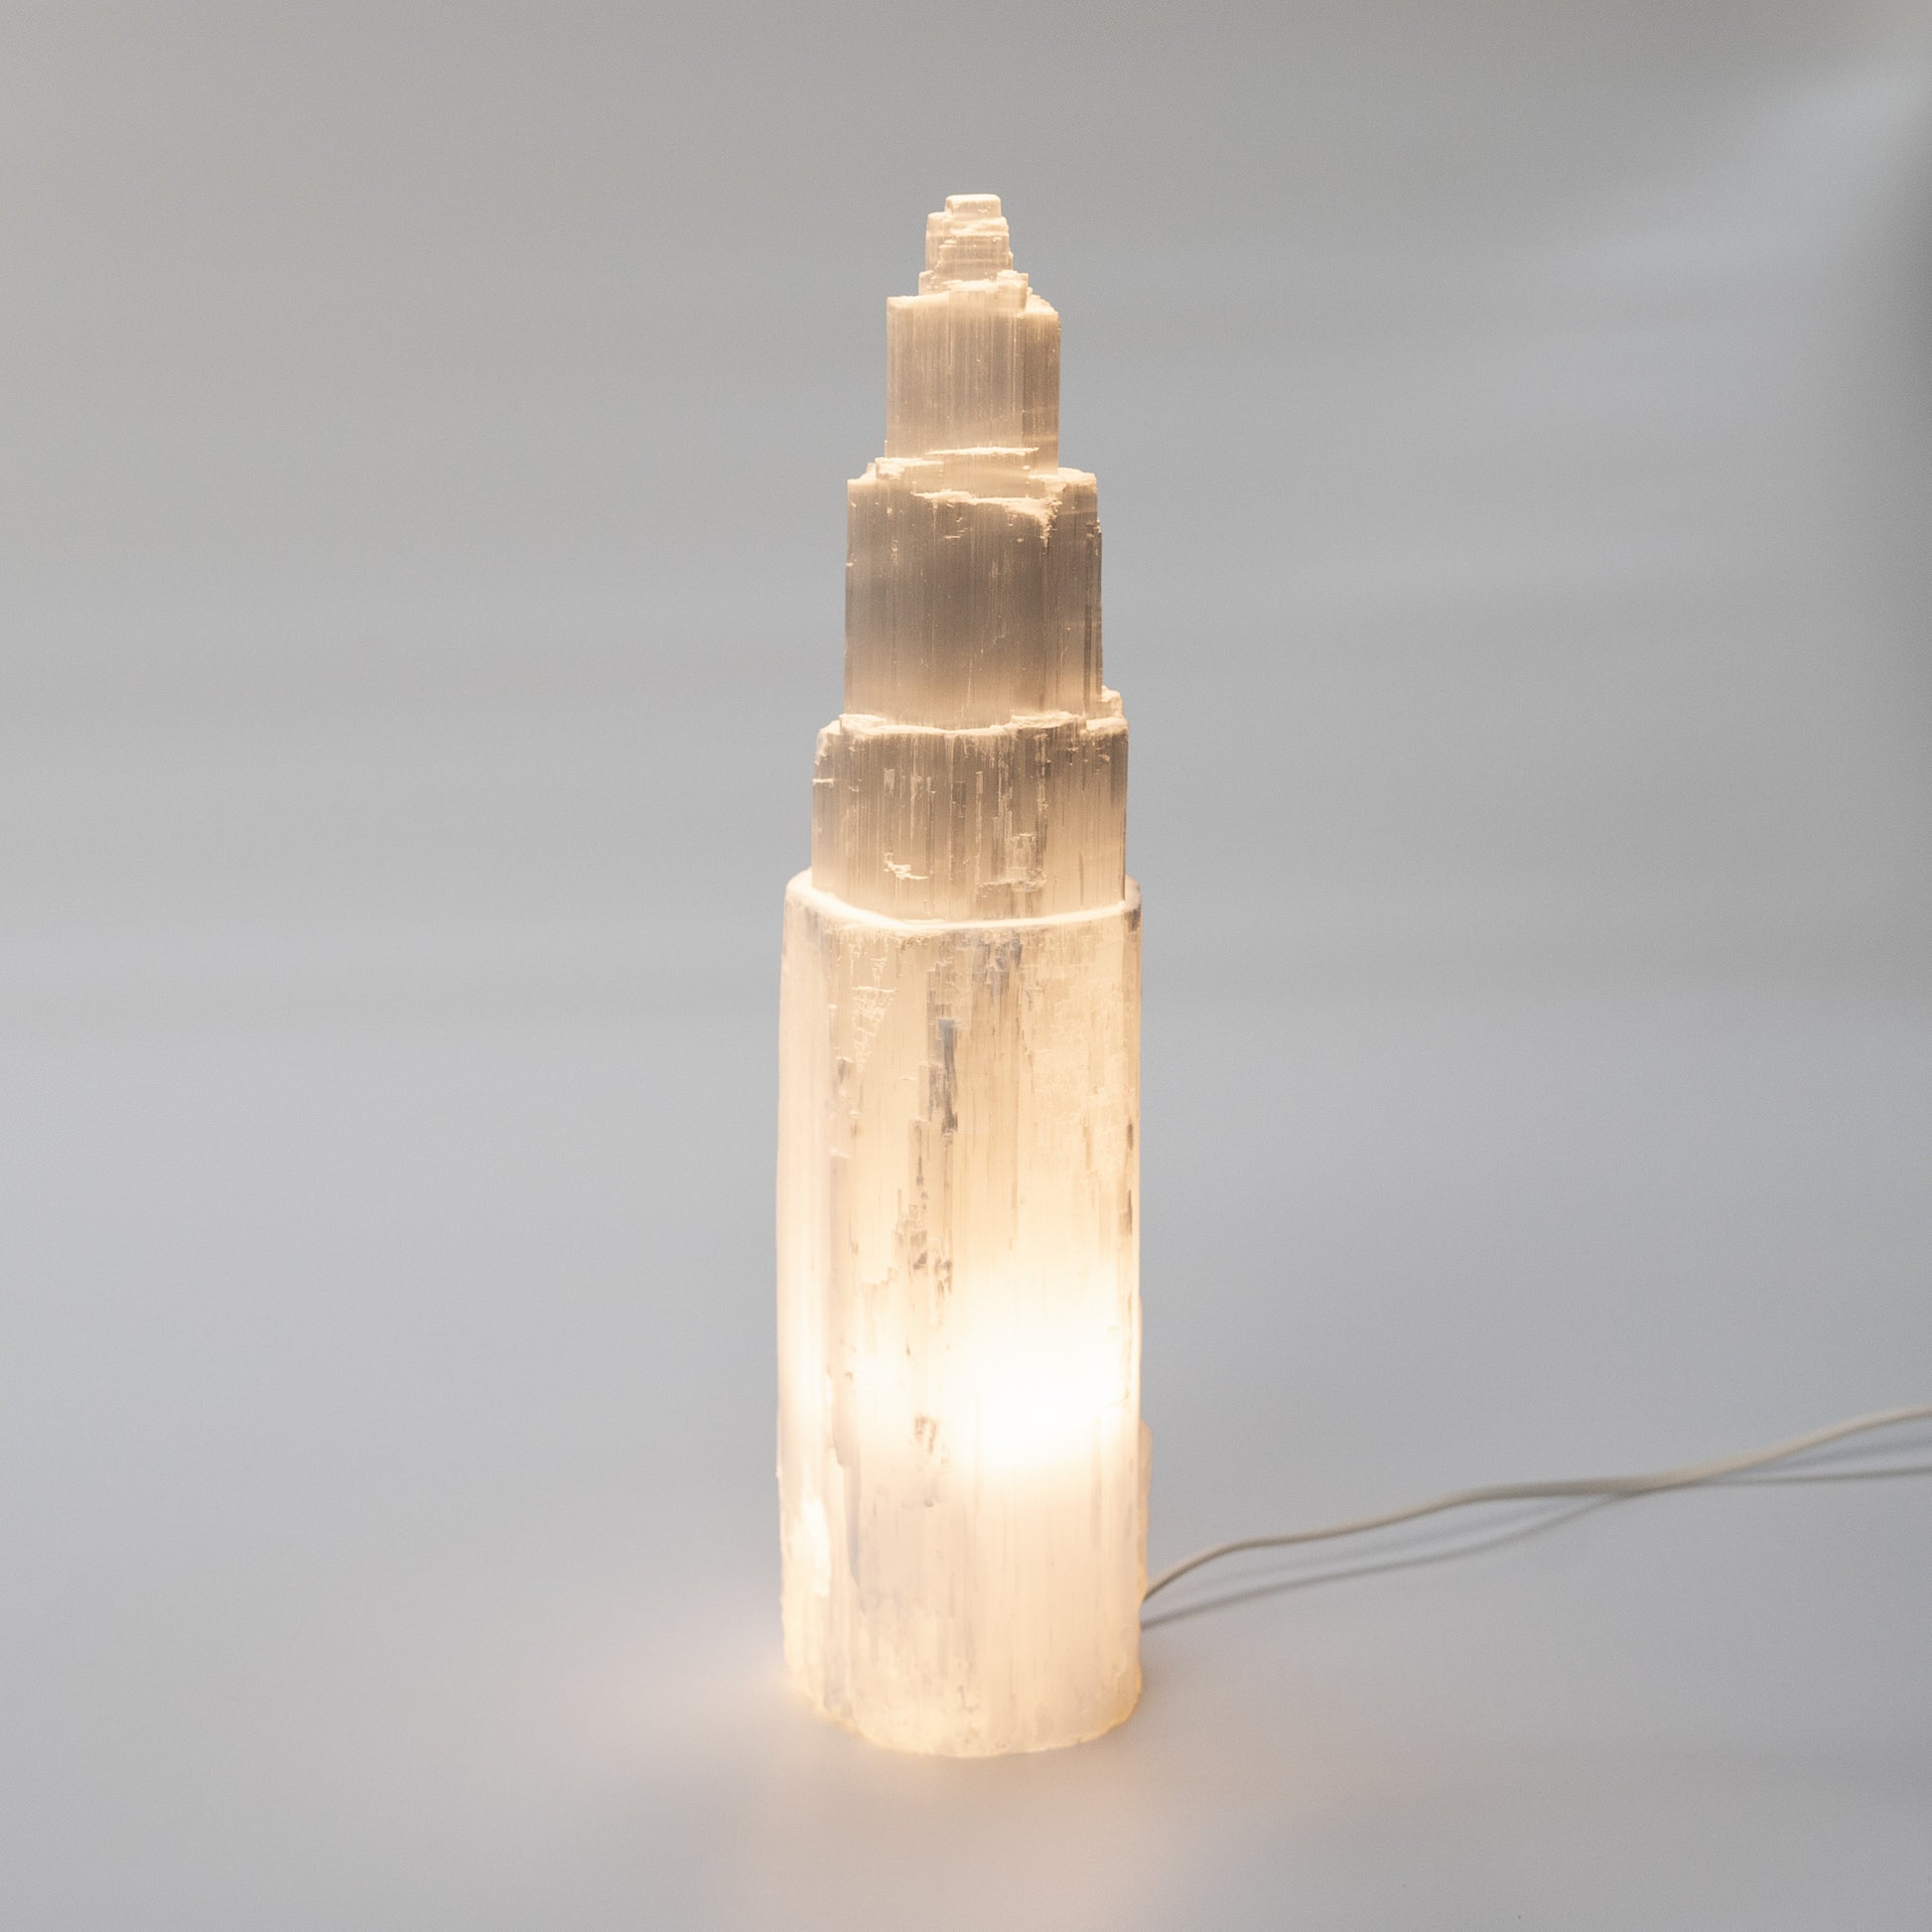 Selenite tower lamp (40cm)